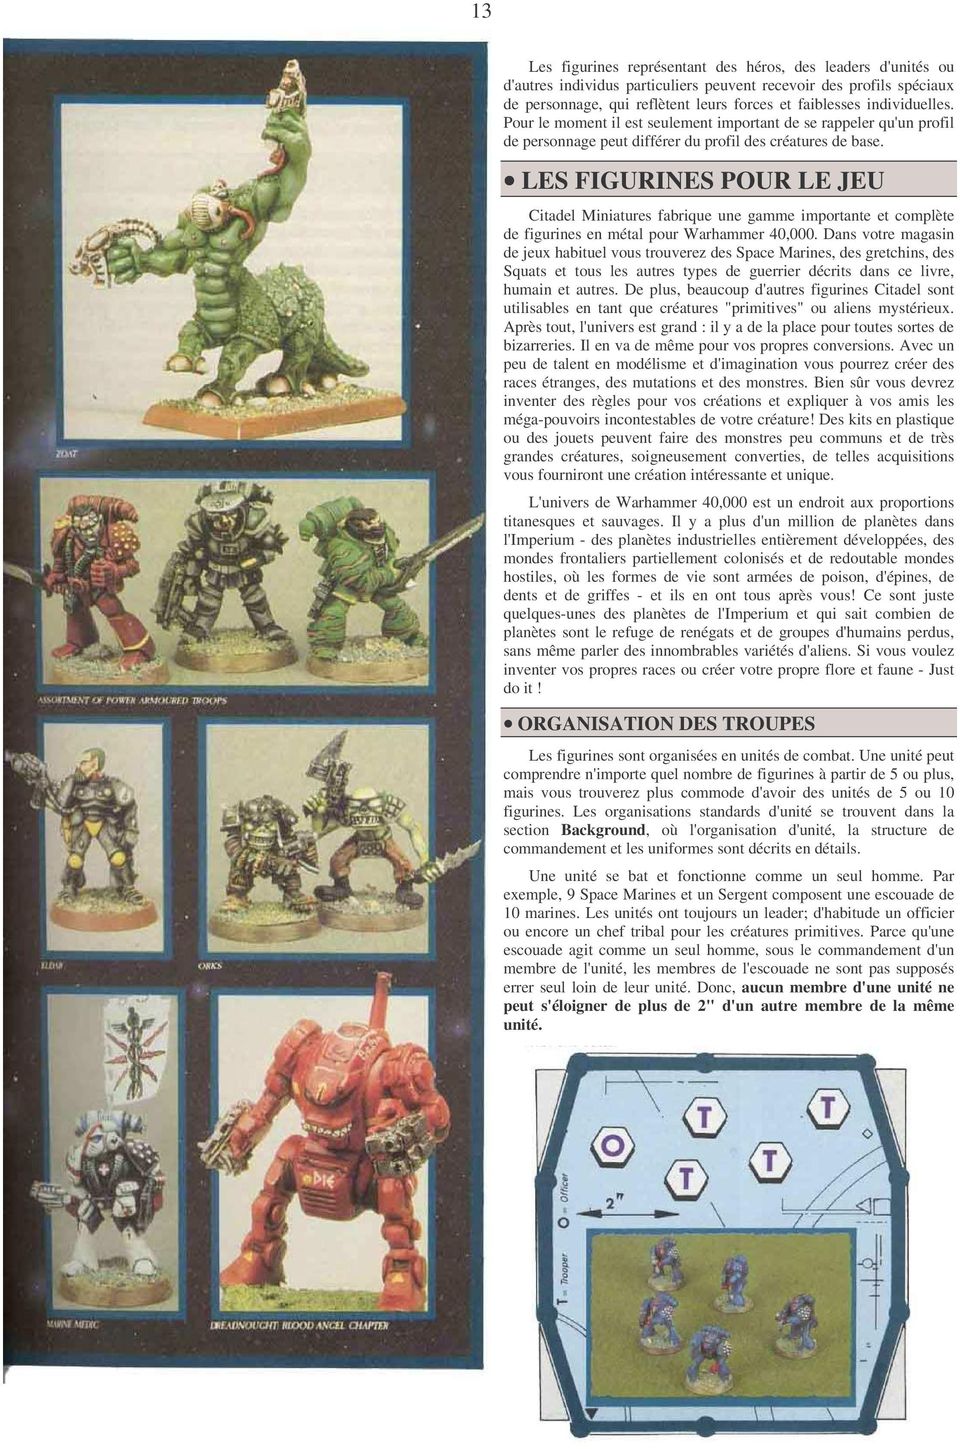 LES FIGURINES POUR LE JEU Citadel Miniatures fabrique une gamme importante et complète de figurines en métal pour Warhammer 40,000.